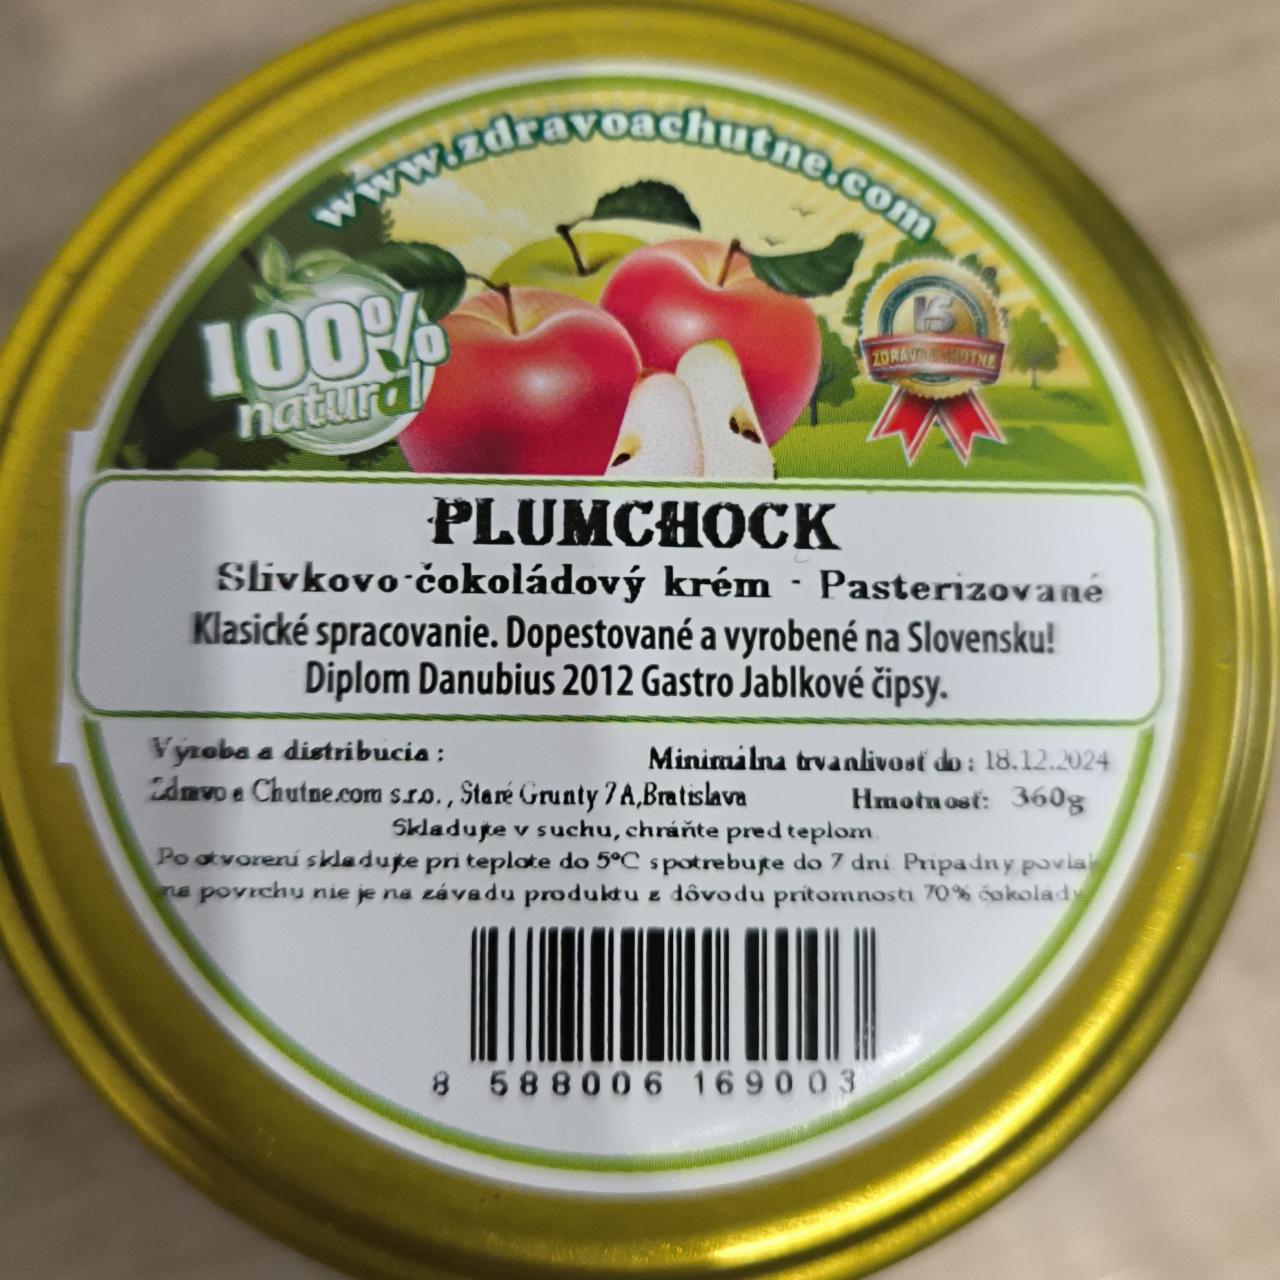 Fotografie - Plumchock Slivkovo-čokoládový krém zdravo a chutne